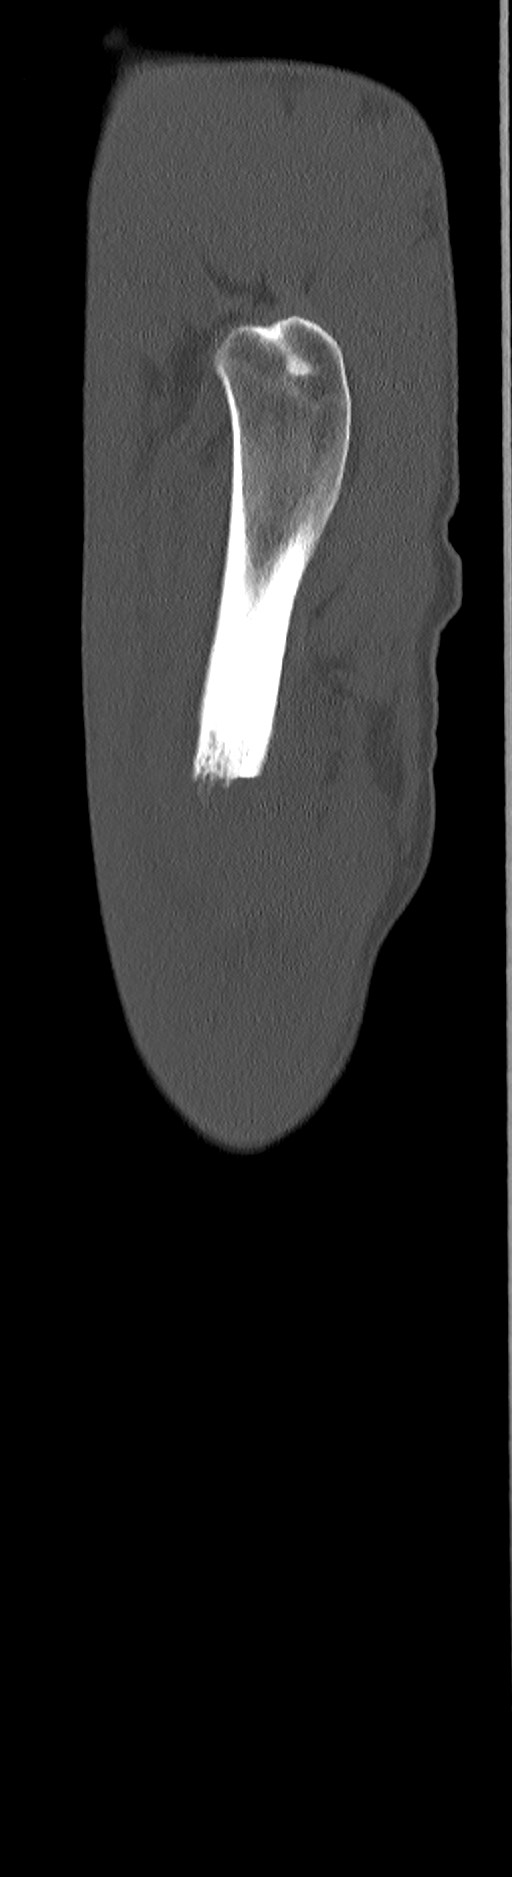 Chronic osteomyelitis (with sequestrum) (Radiopaedia 74813-85822 C 100).jpg